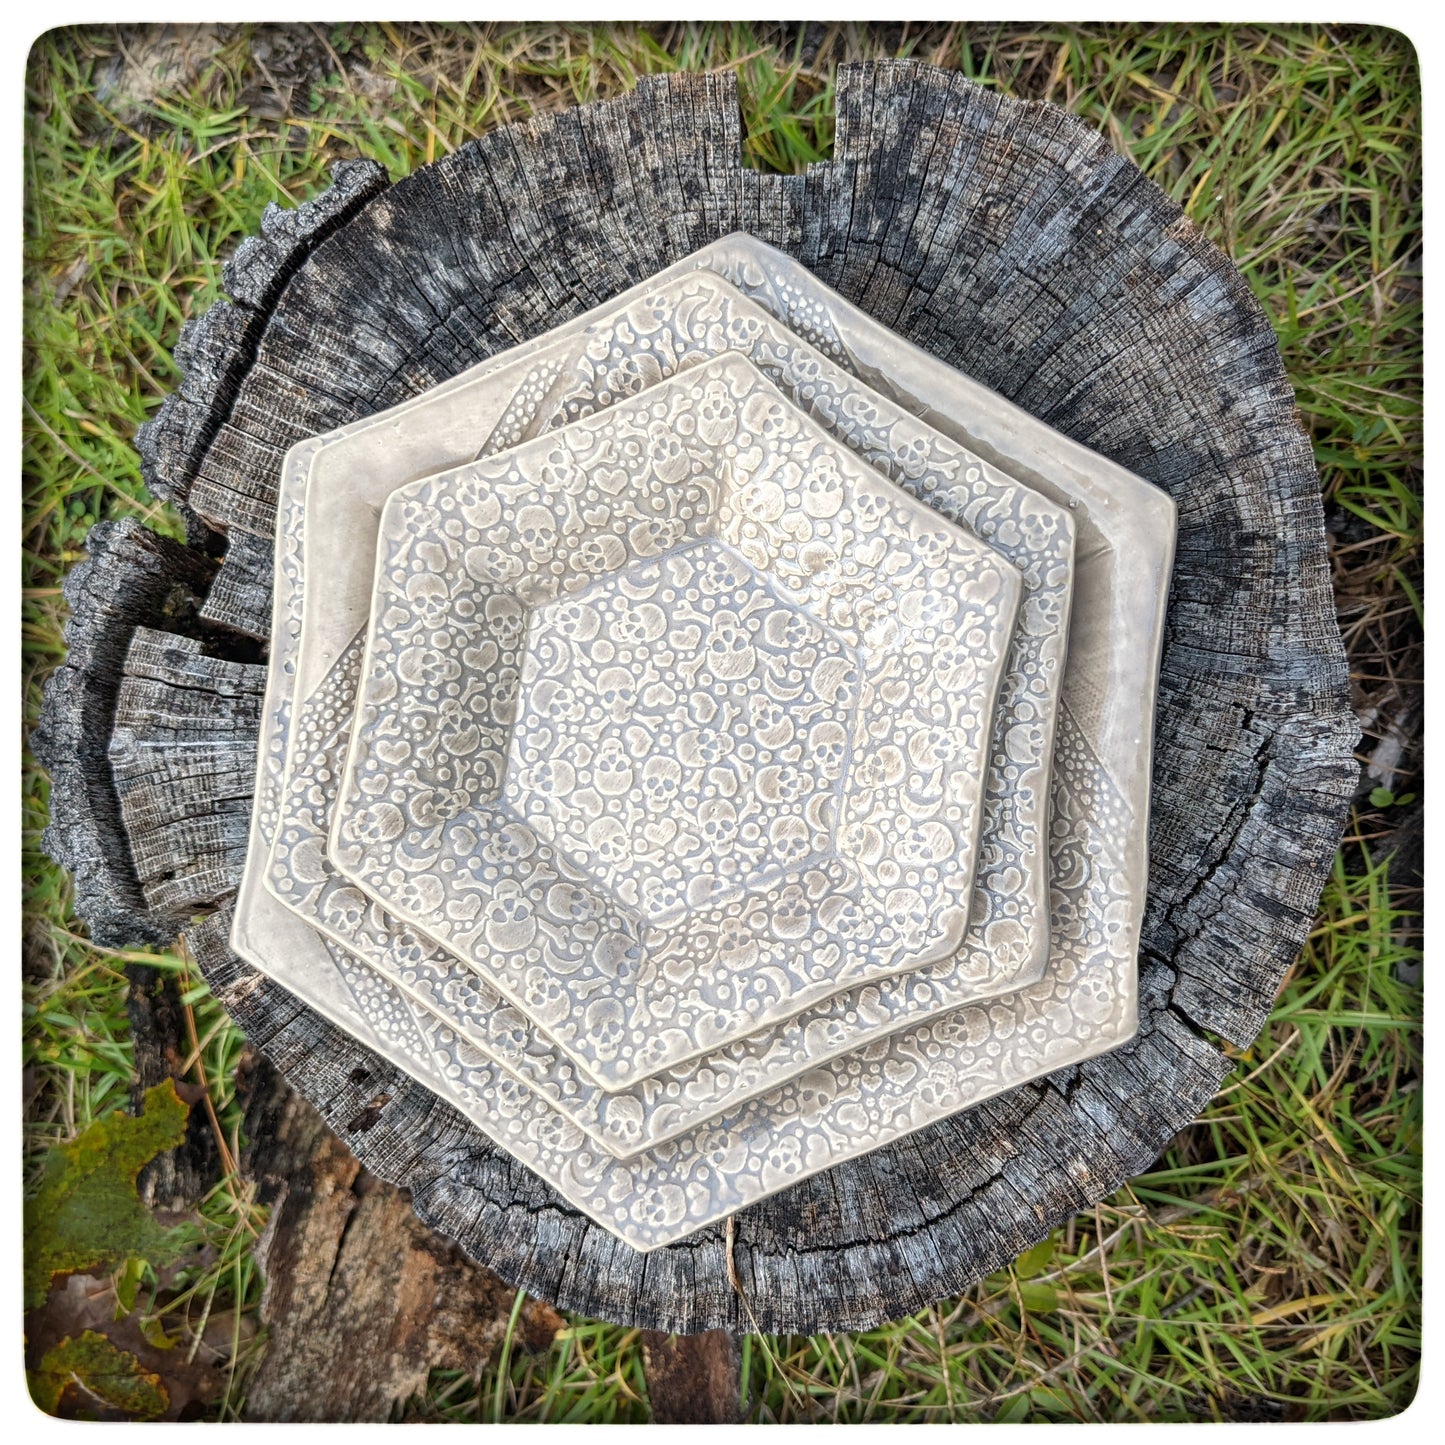 Skull hexagon dish (8.5 inch)